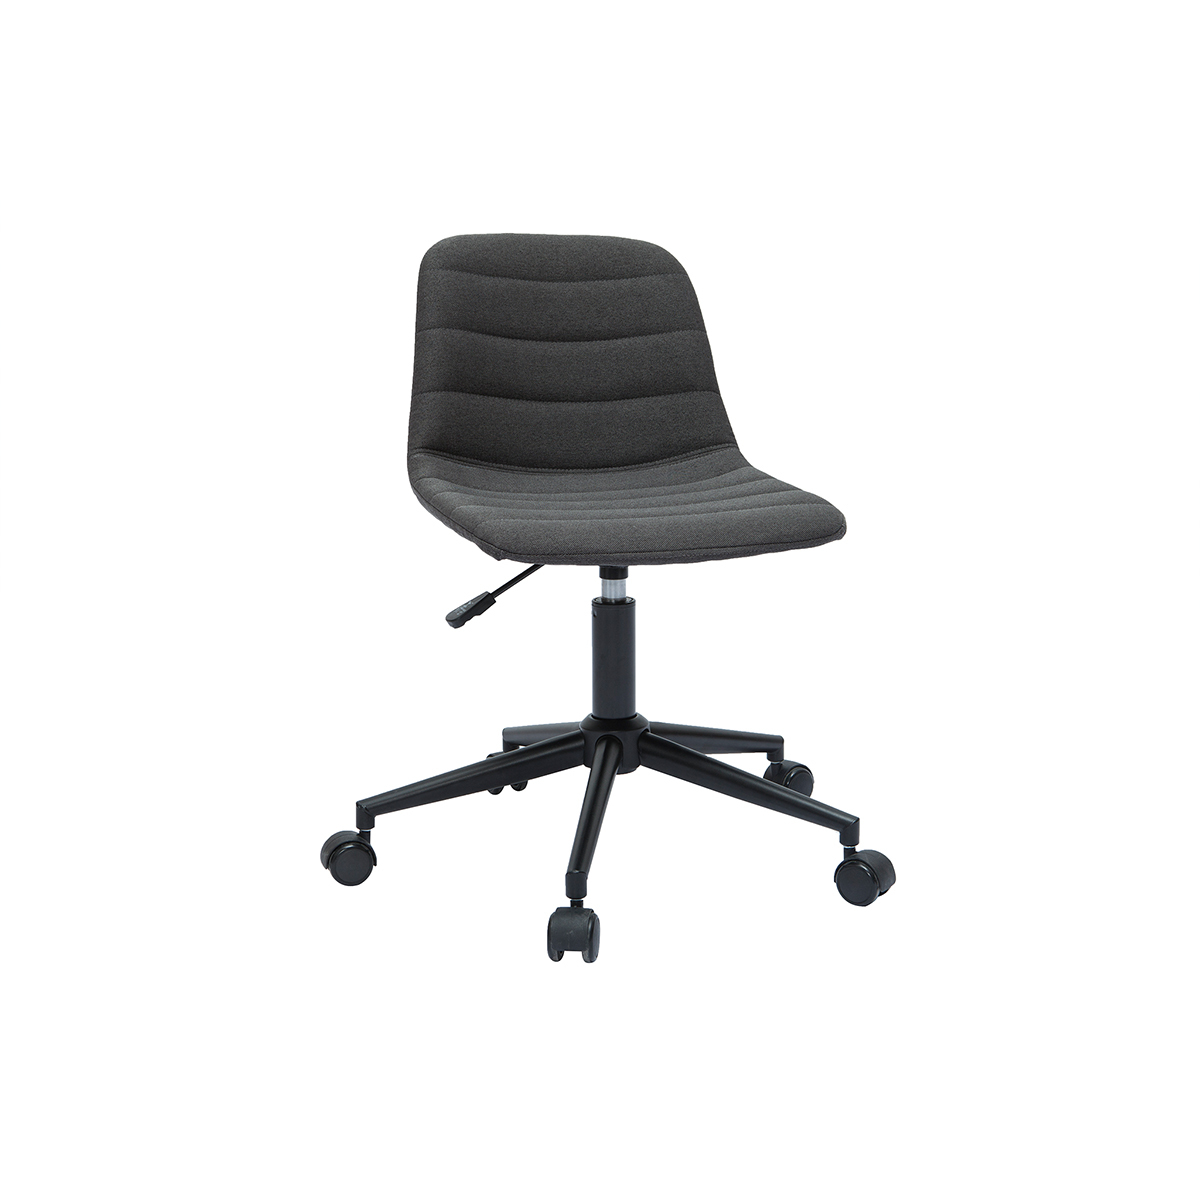 Chaise de bureau design tissu gris anthracite et métal noir SAURY vue1